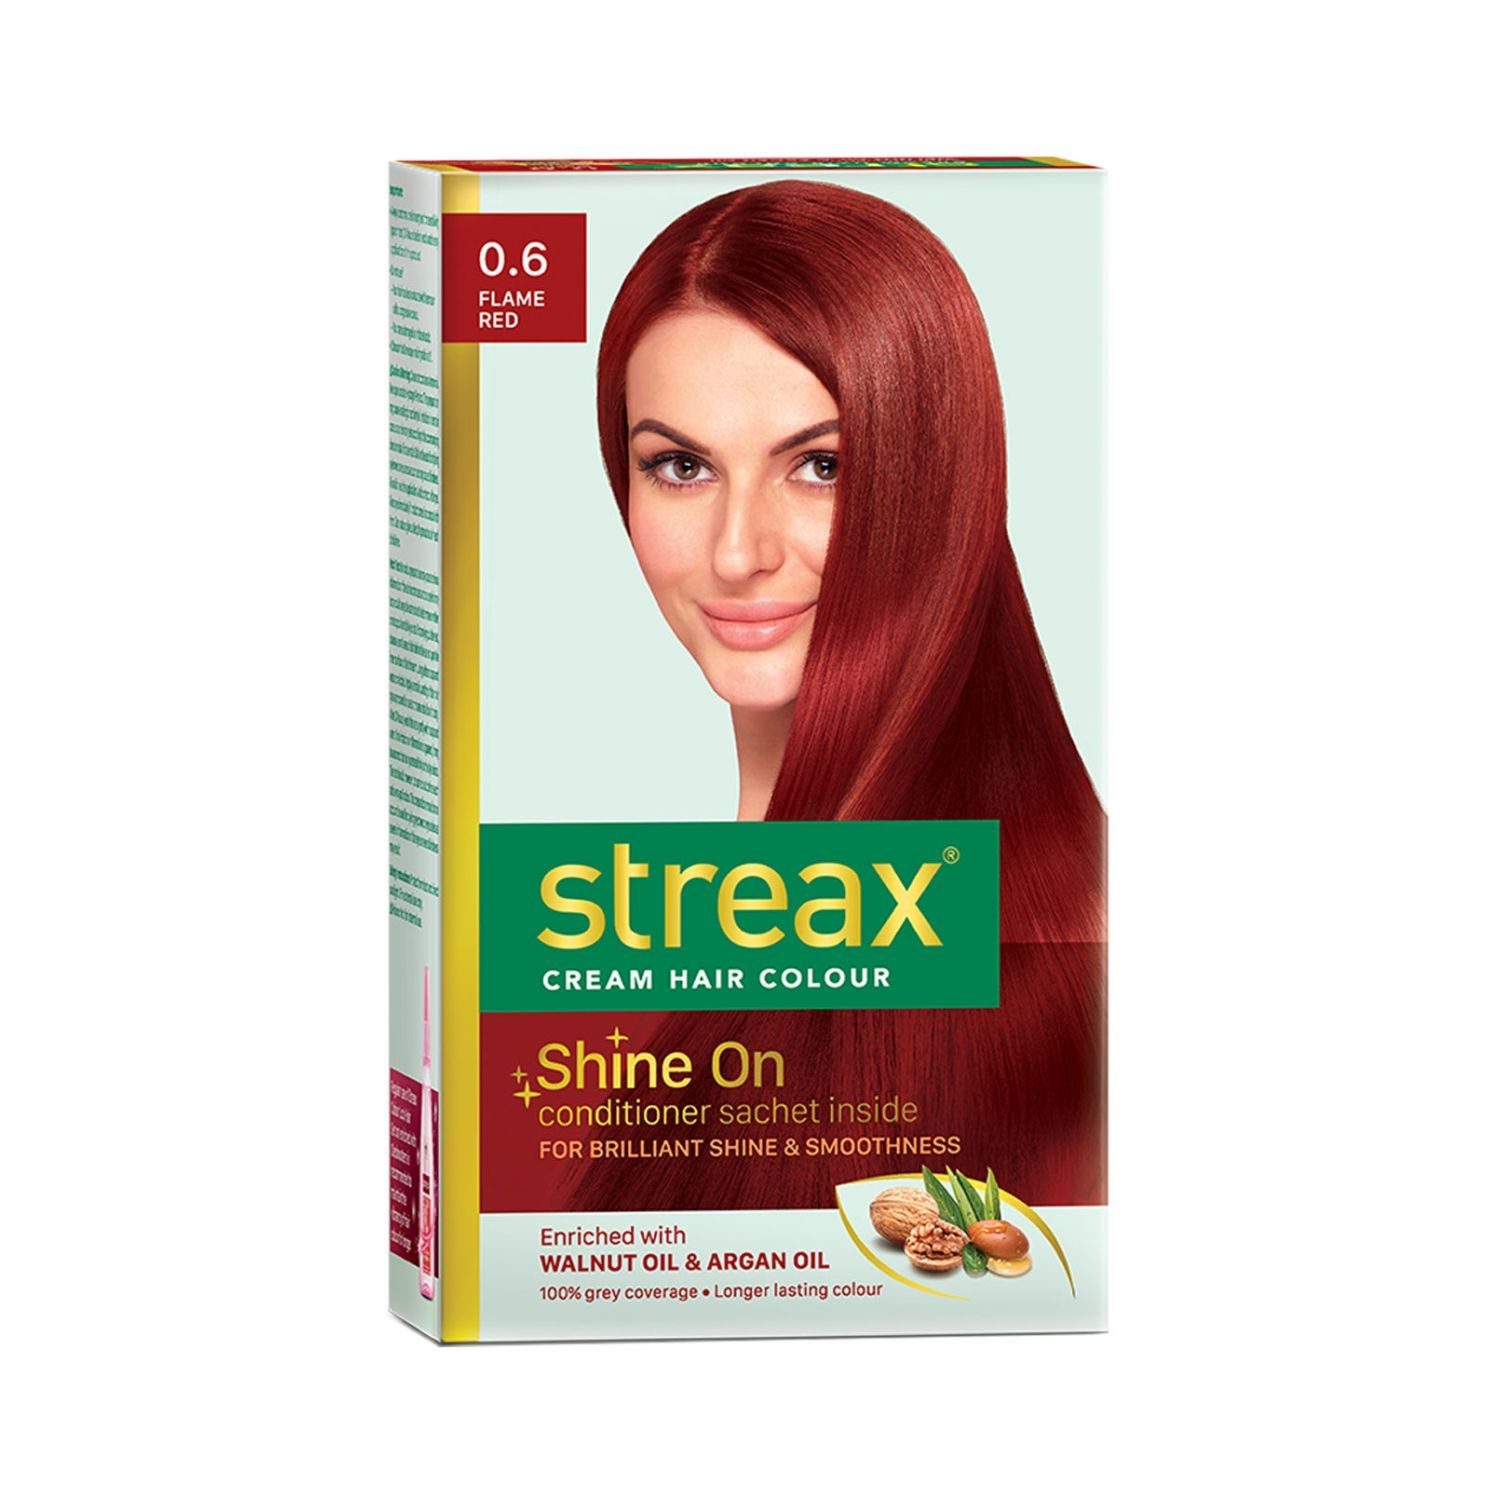 Streax Hair Colour - 0.6 Flame Red (70gm+50ml)